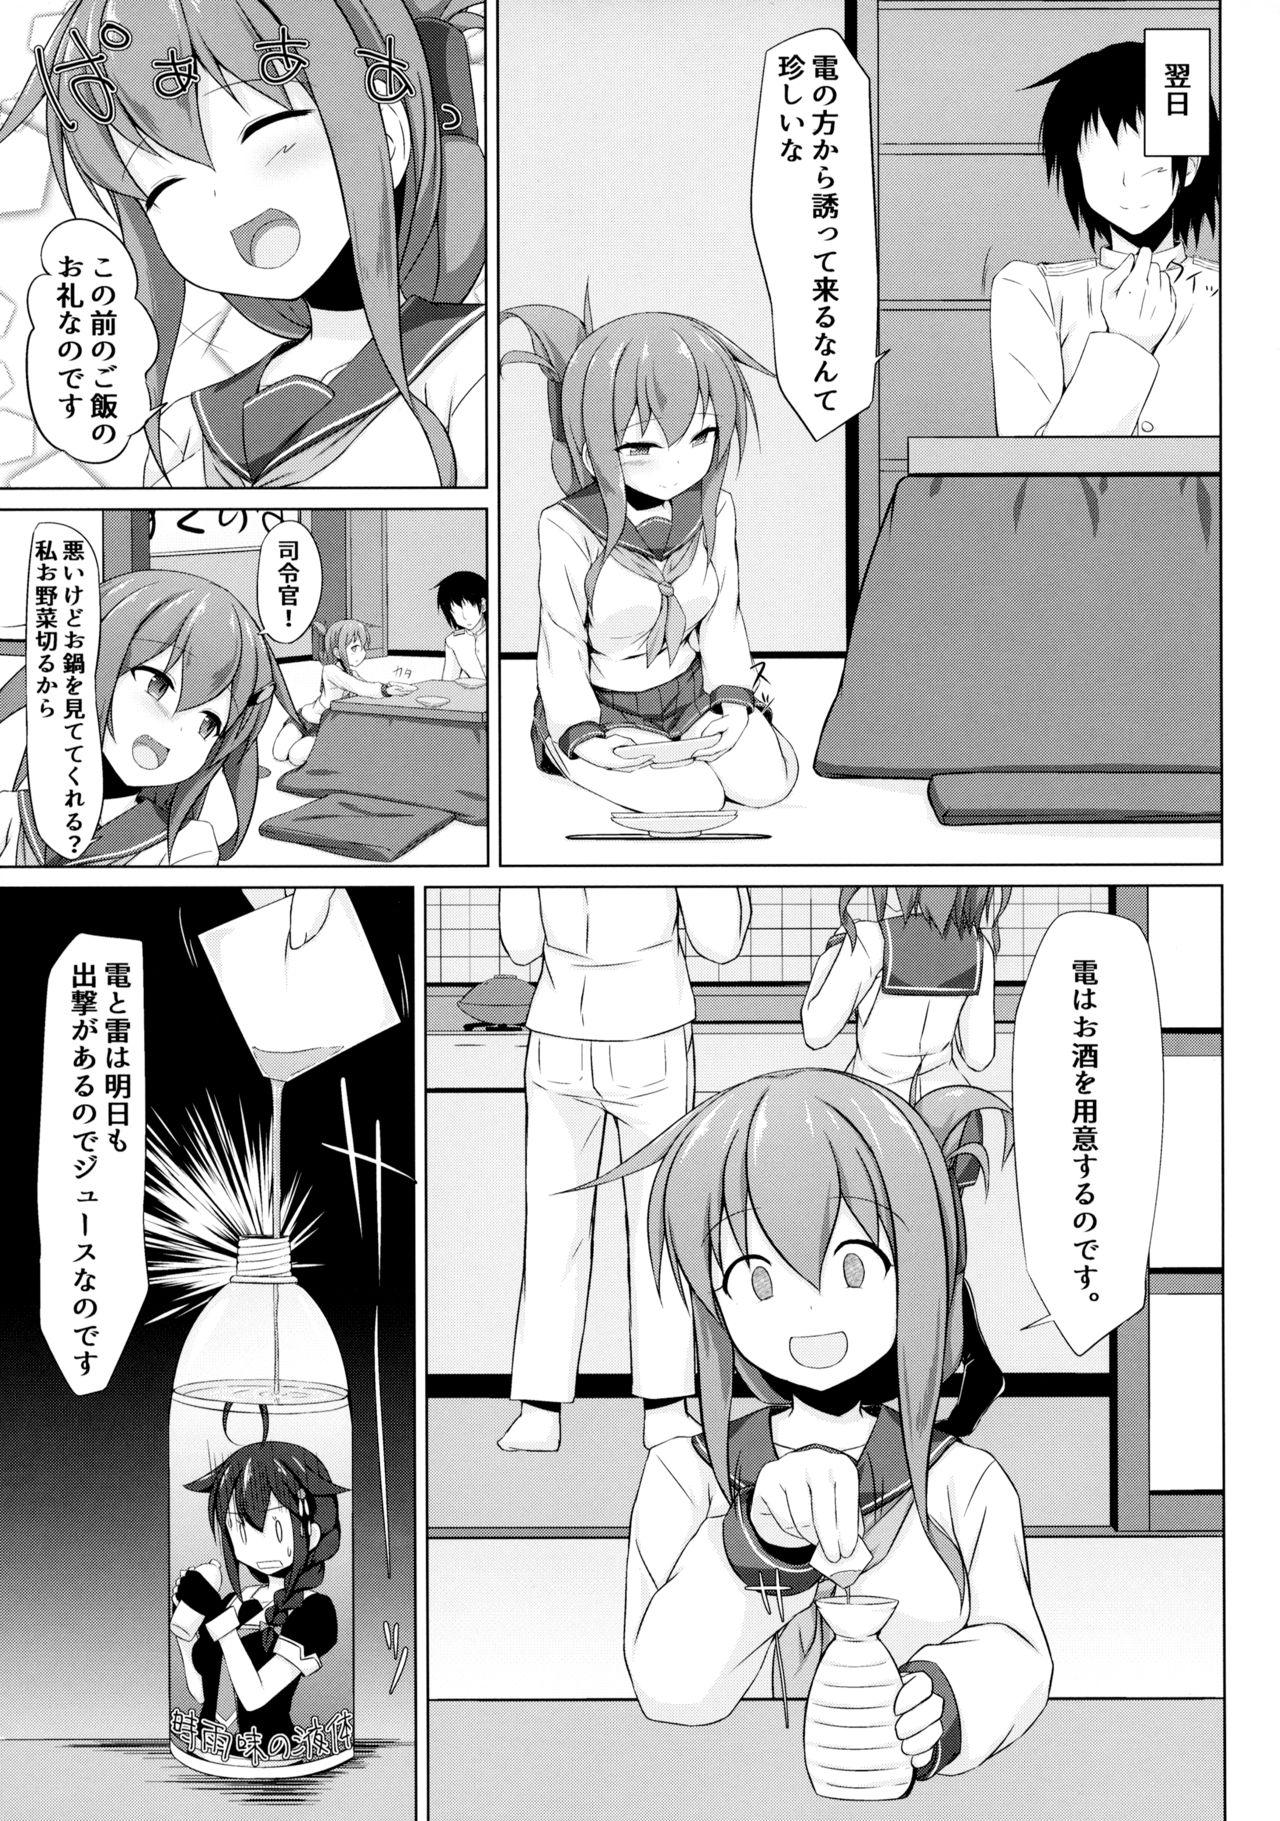 Screaming Ikazuchi to Inazuma wa Shireikan no Aka-chan ga Hoshii no desu!! - Kantai collection Leche - Page 6